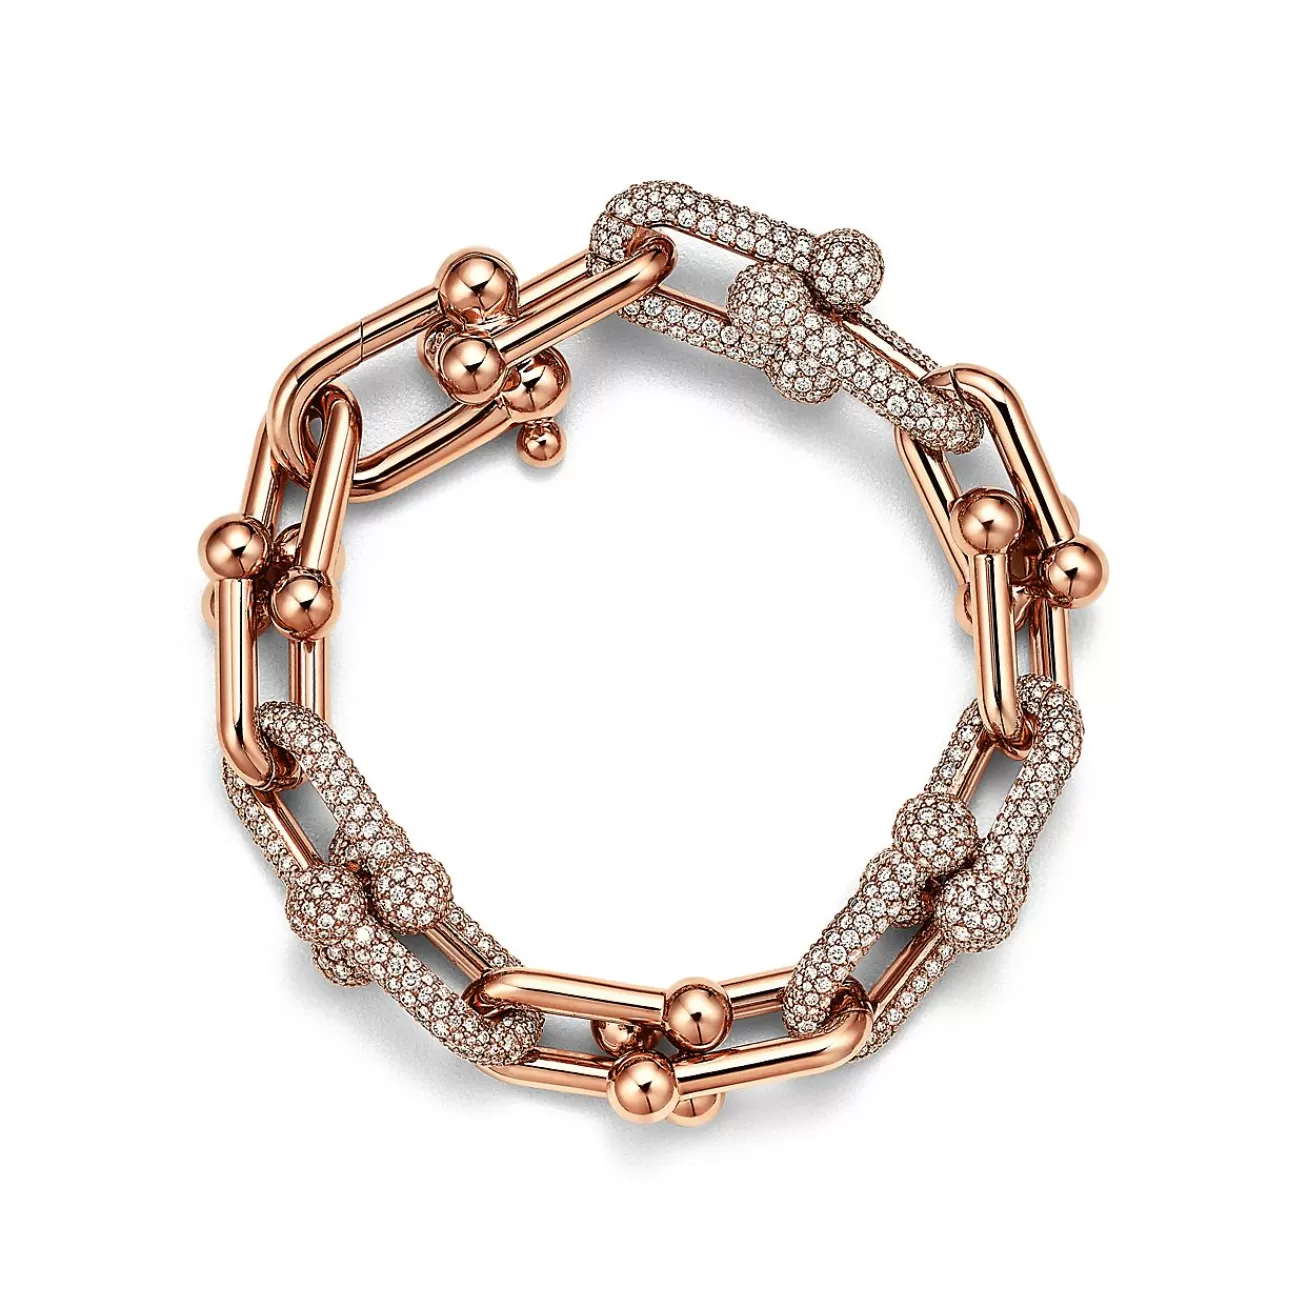 Tiffany & Co. Tiffany HardWear Large Link Bracelet in Rose Gold with Pavé Diamonds | ^ Bracelets | Rose Gold Jewelry